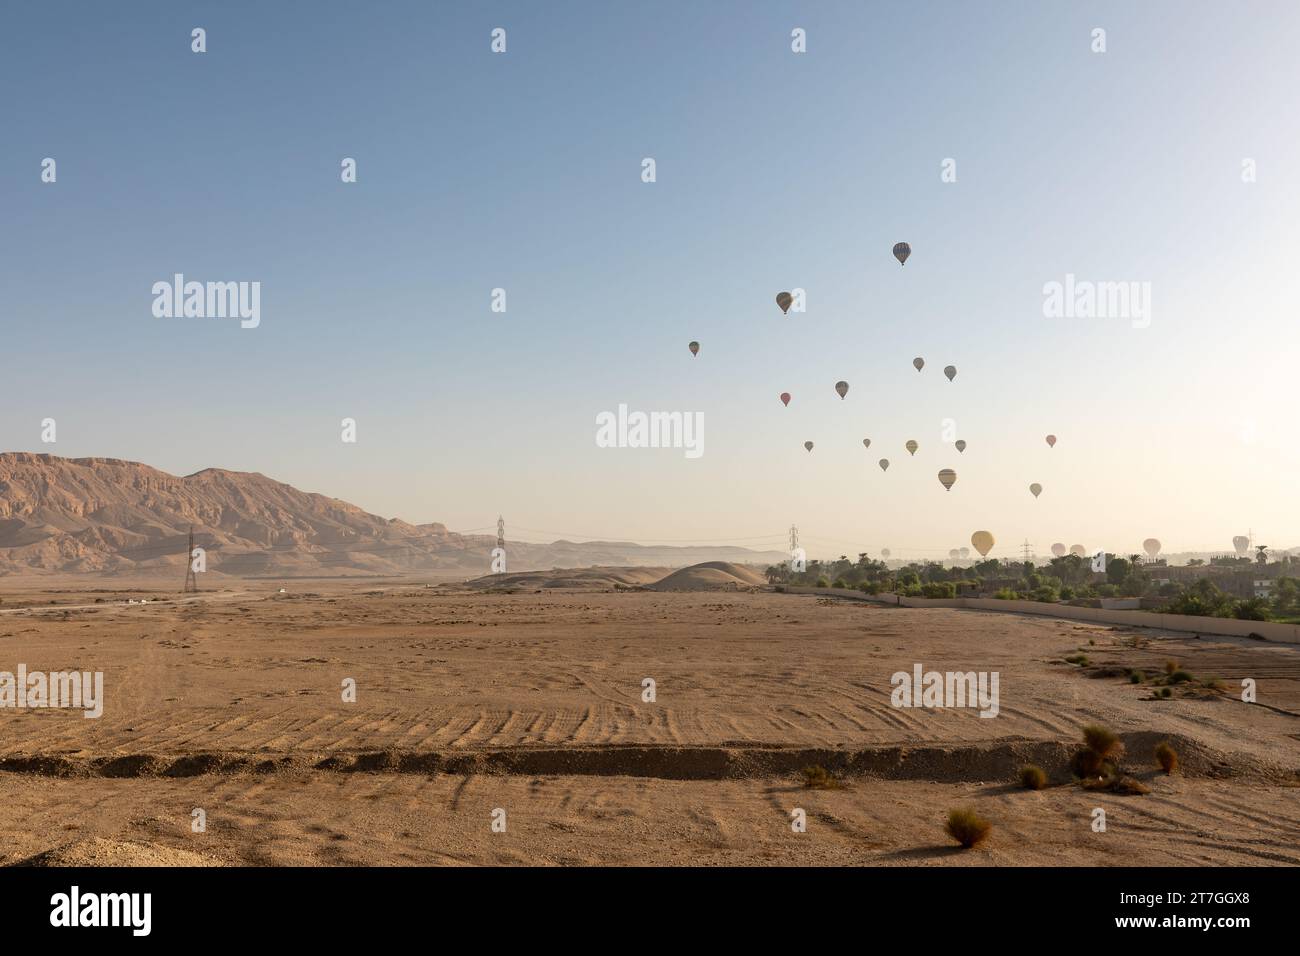 Groupe de montgolfières décollant dans le paysage désertique aride de la Vallée des Rois Banque D'Images